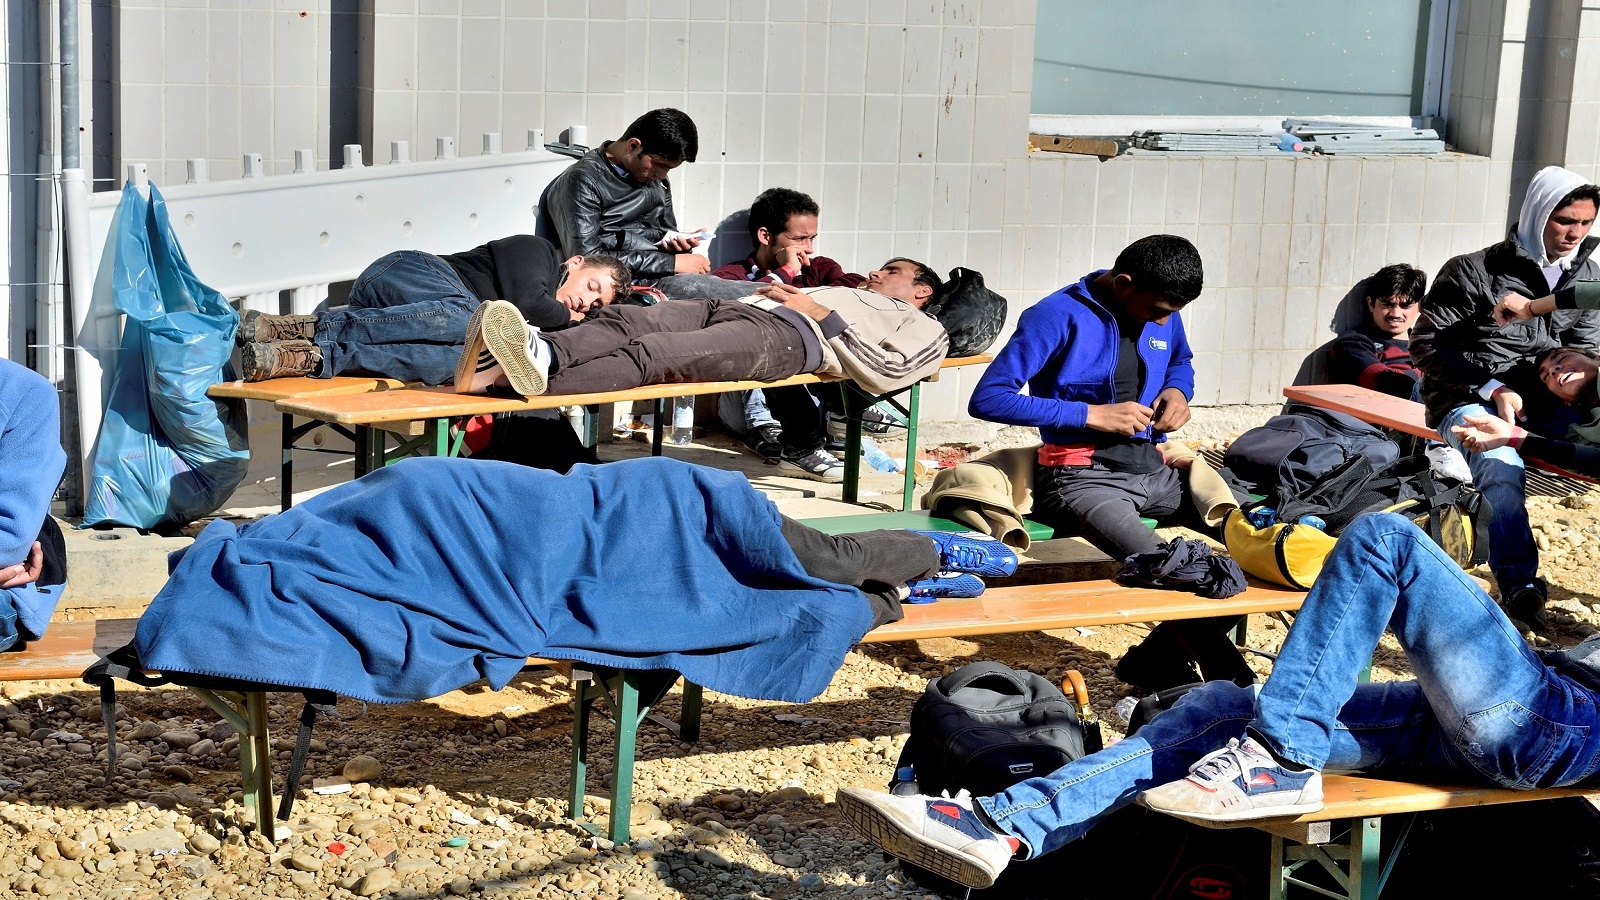 مصادر تمويل نفقات اللاجئين السوريين تقلق ألمانيا